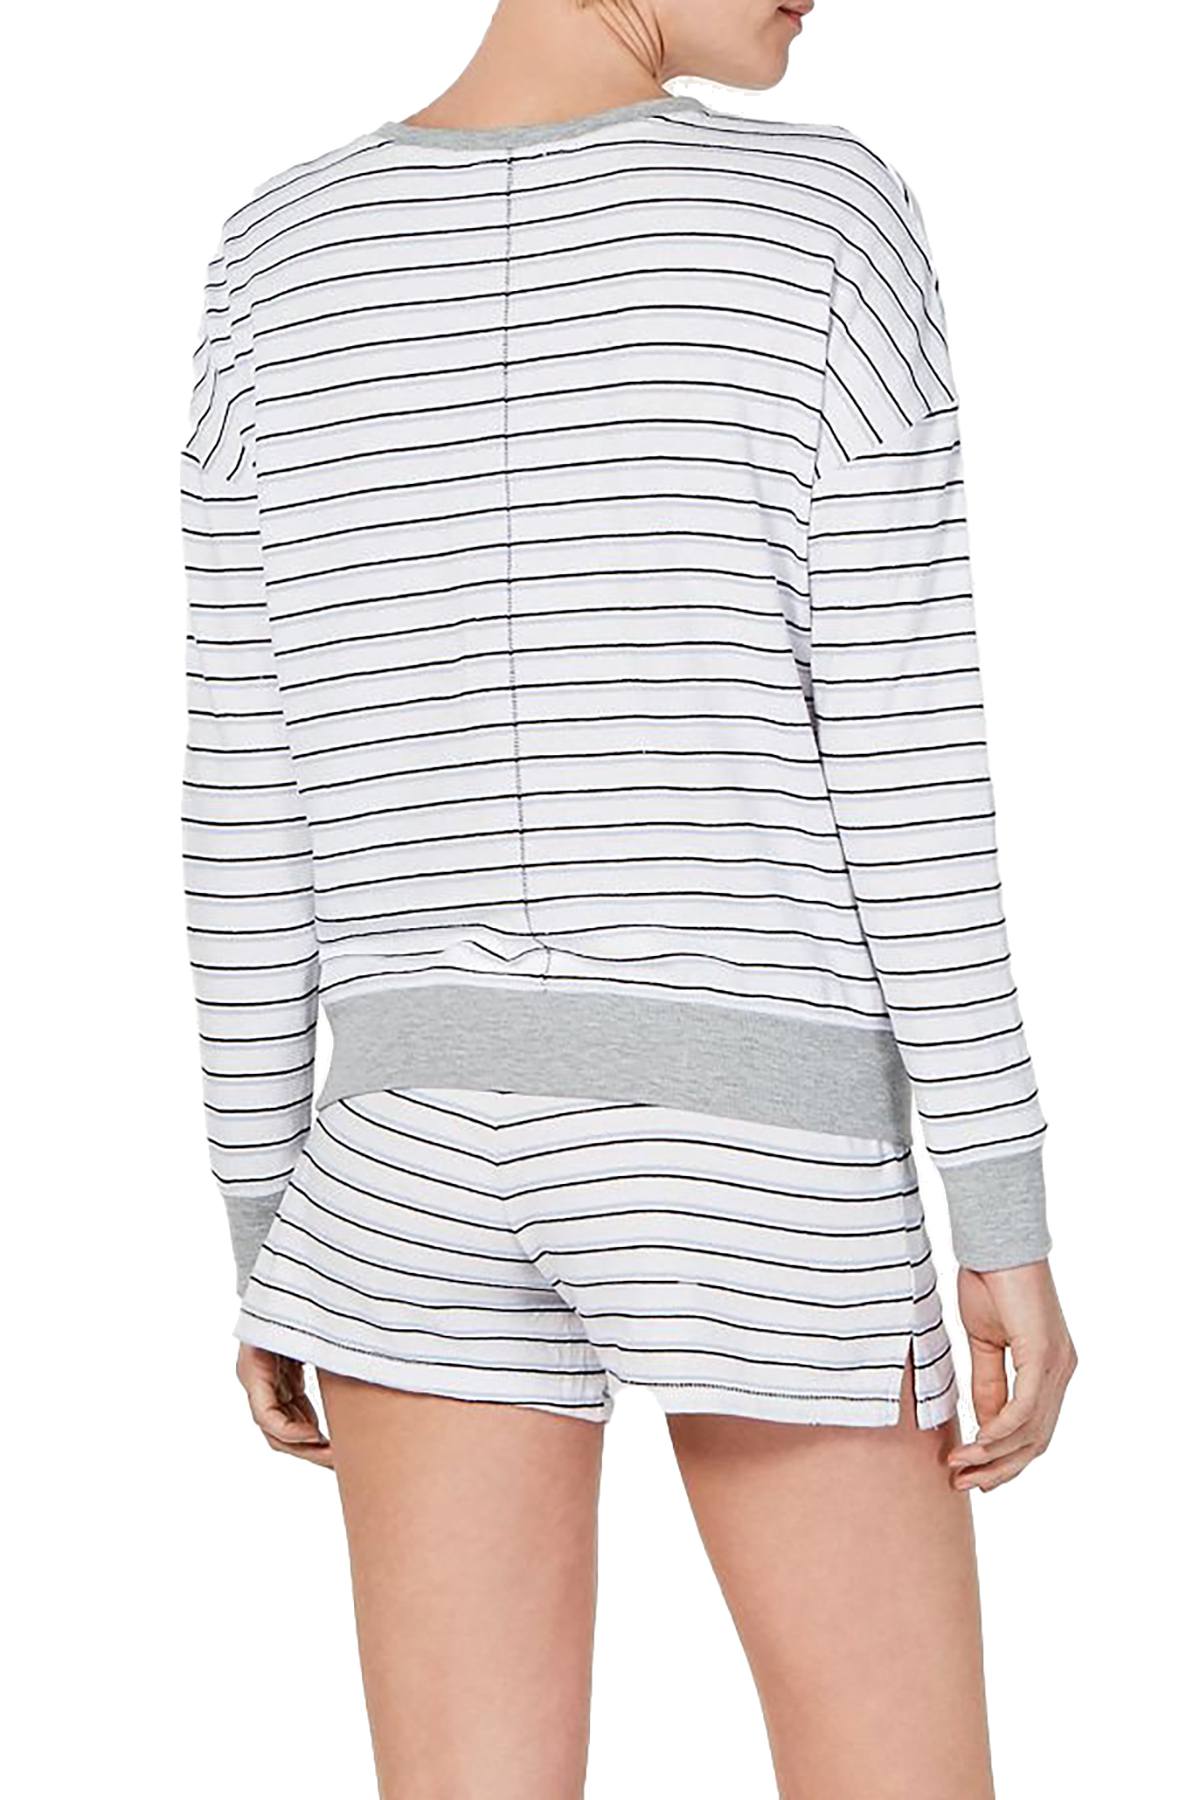 Alfani Ultra Soft Striped Pajama Short in Varsity Stripe White ...